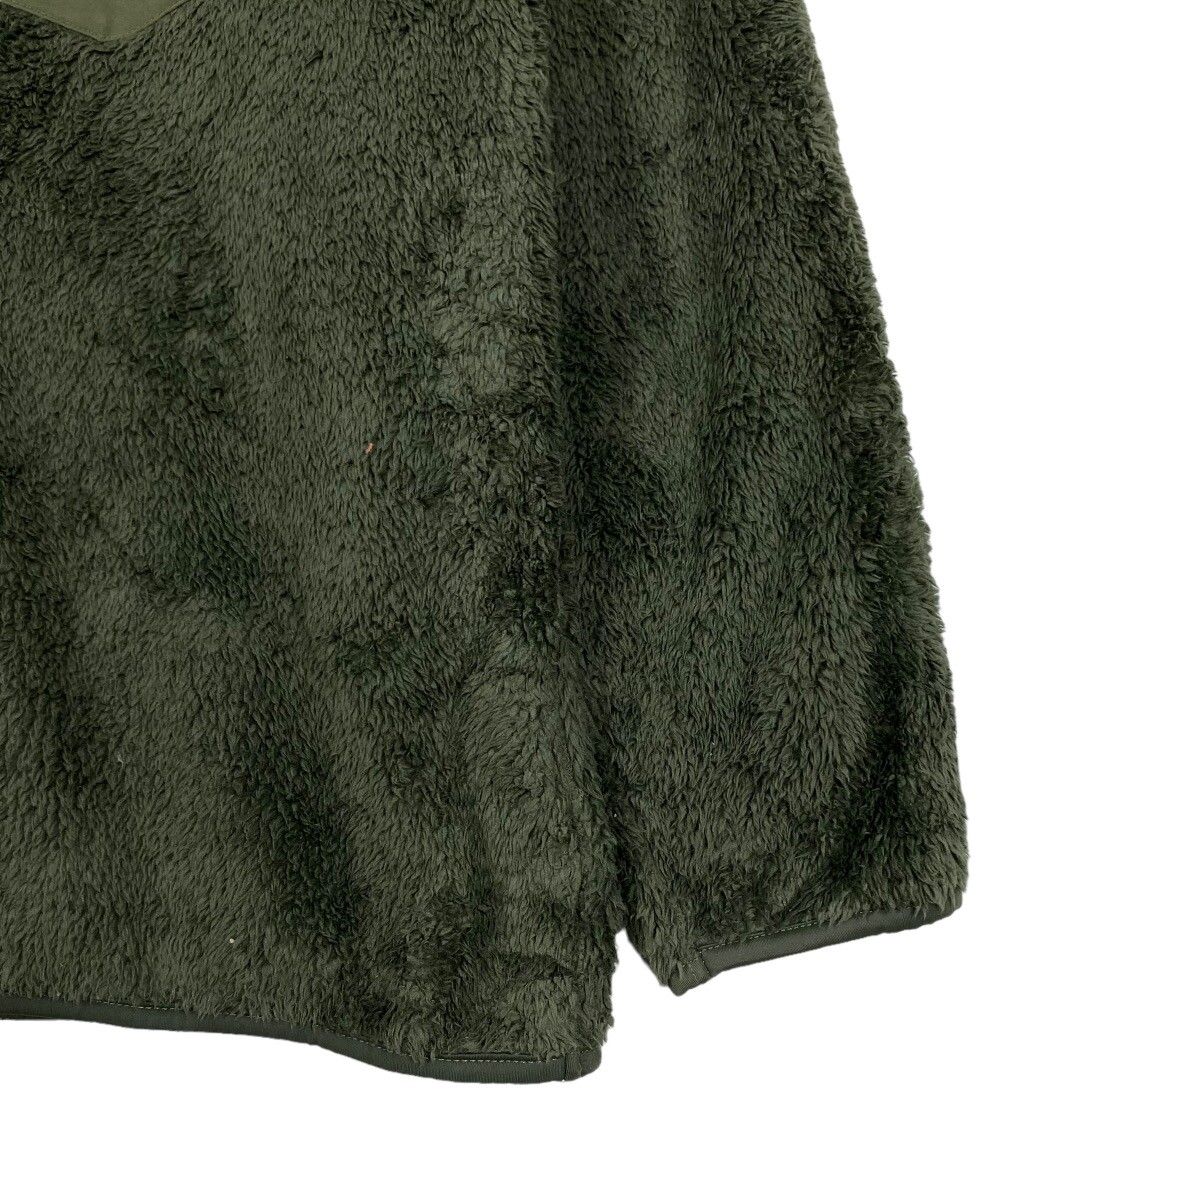 Uniqlo x Engineered Garments Fleece Sweater - 7